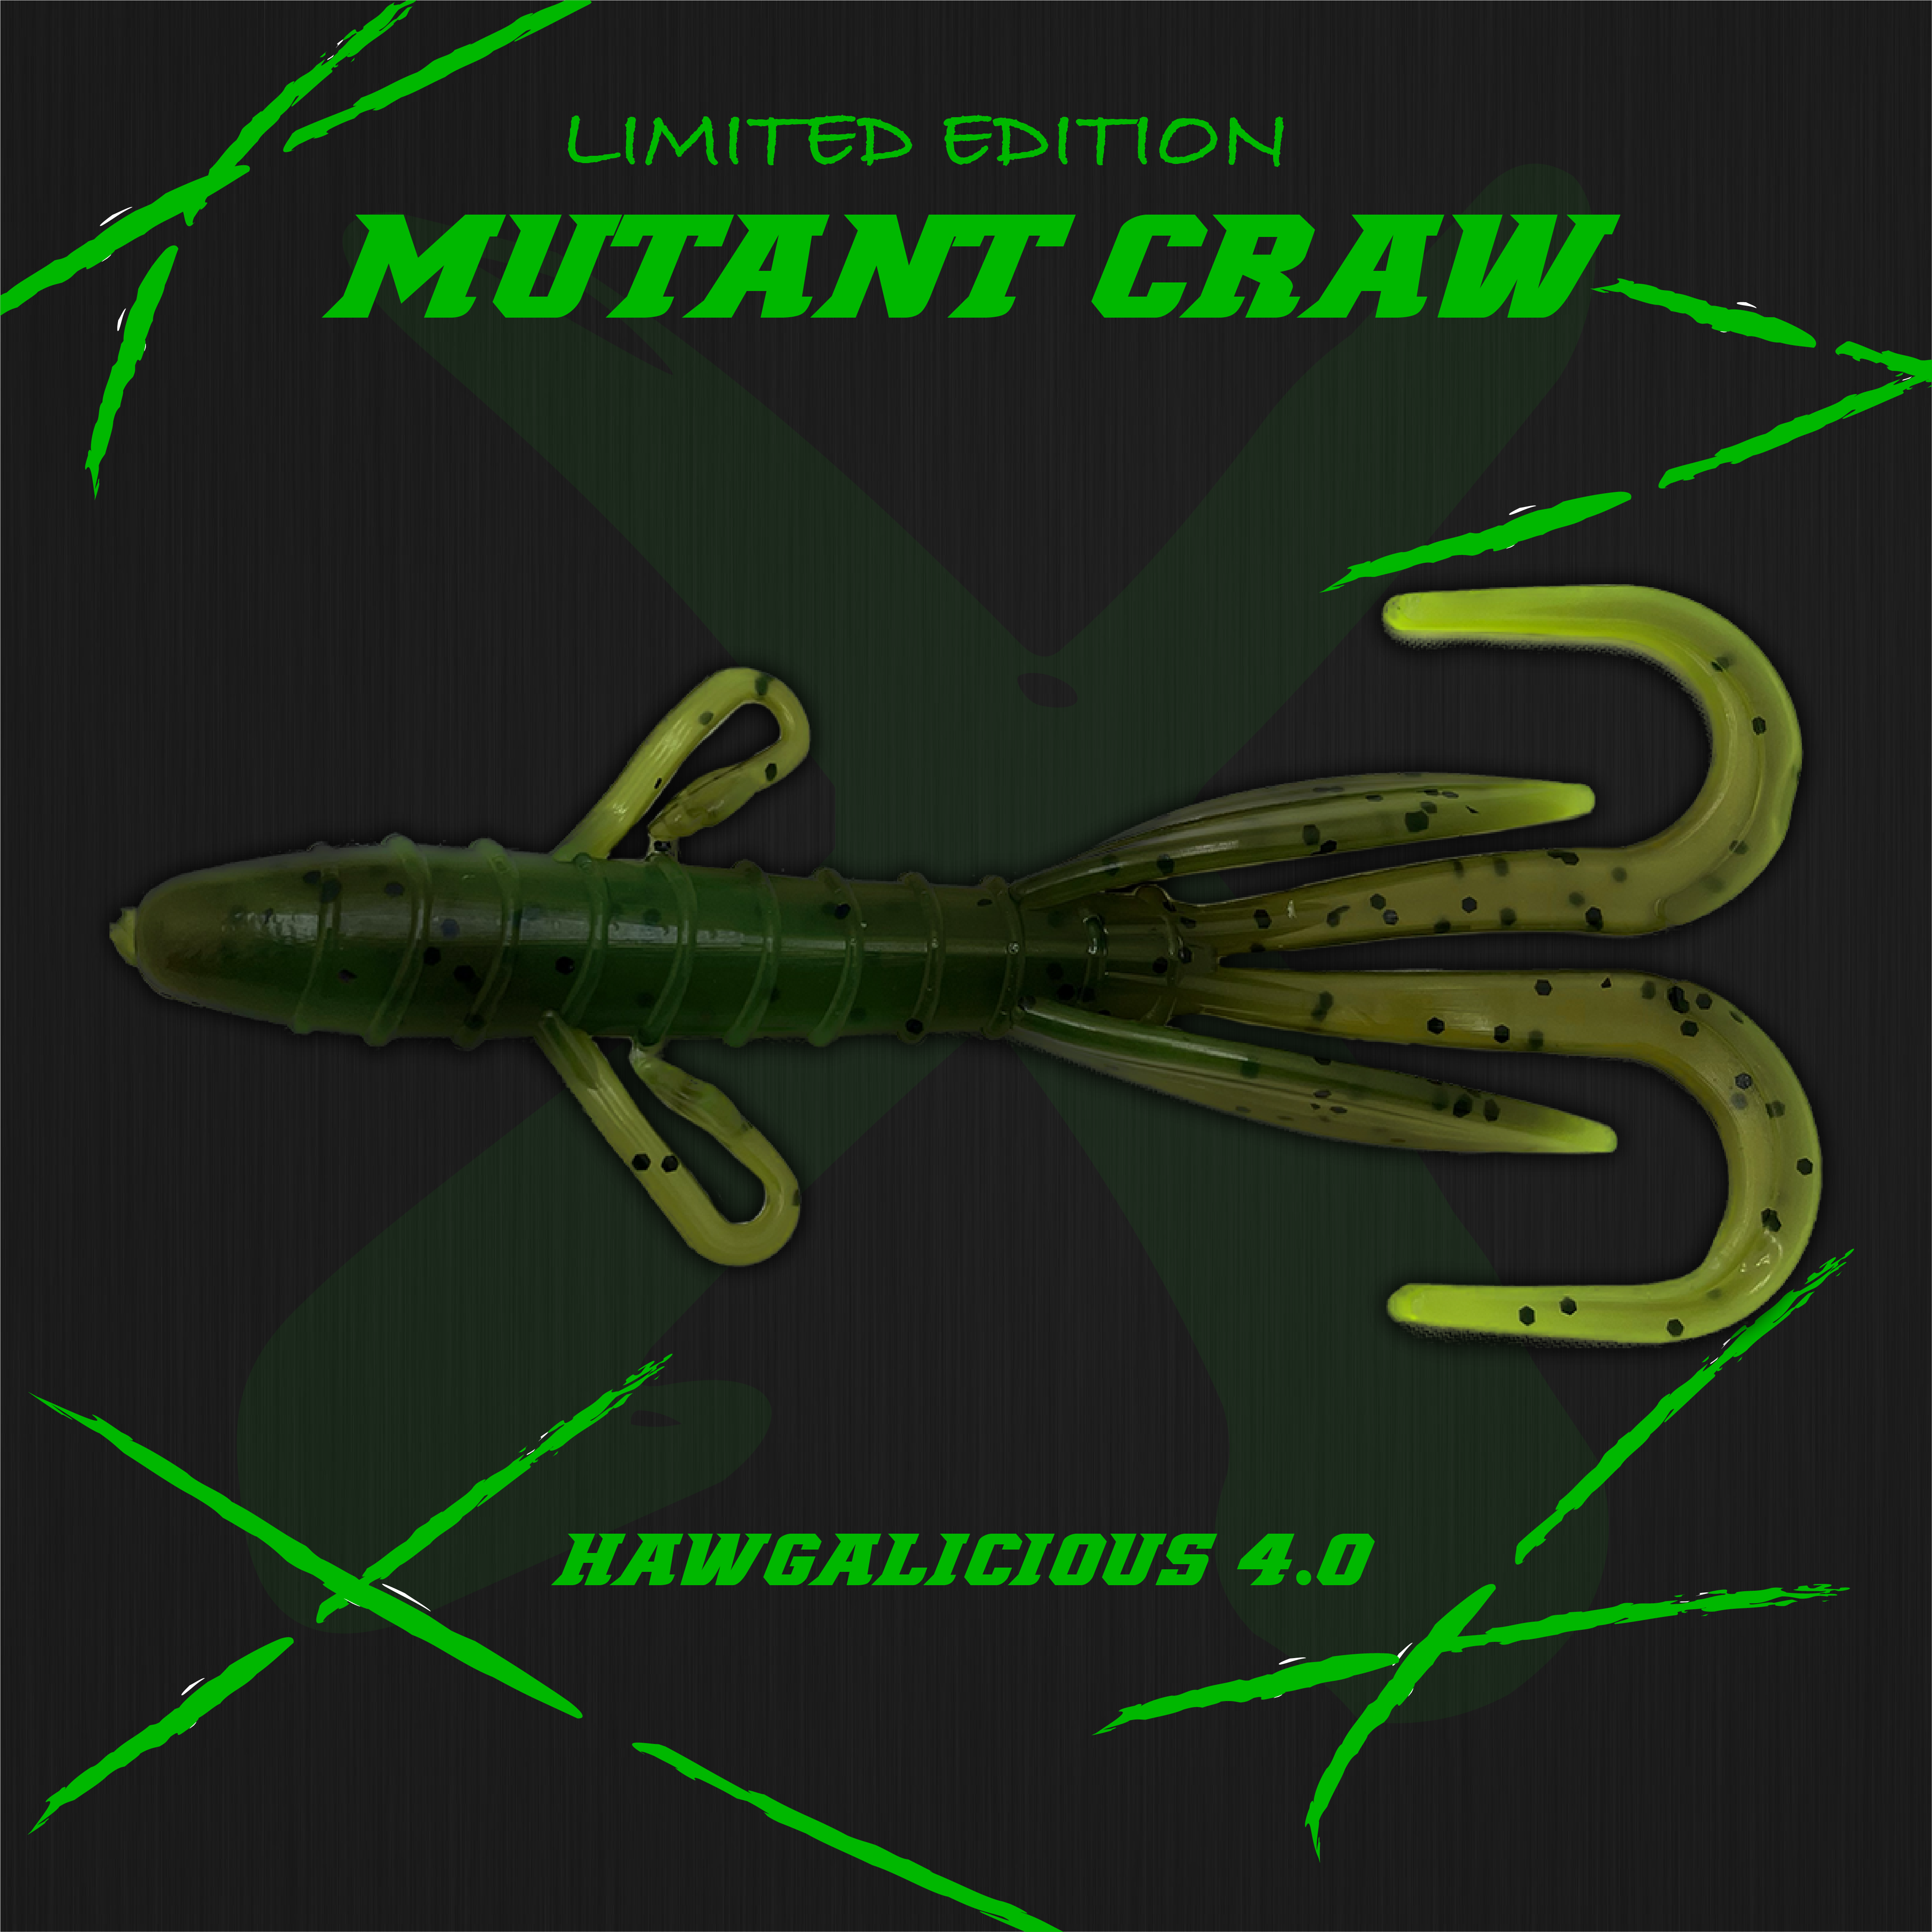 Hawgalicious 4.0 - Mutant Craw